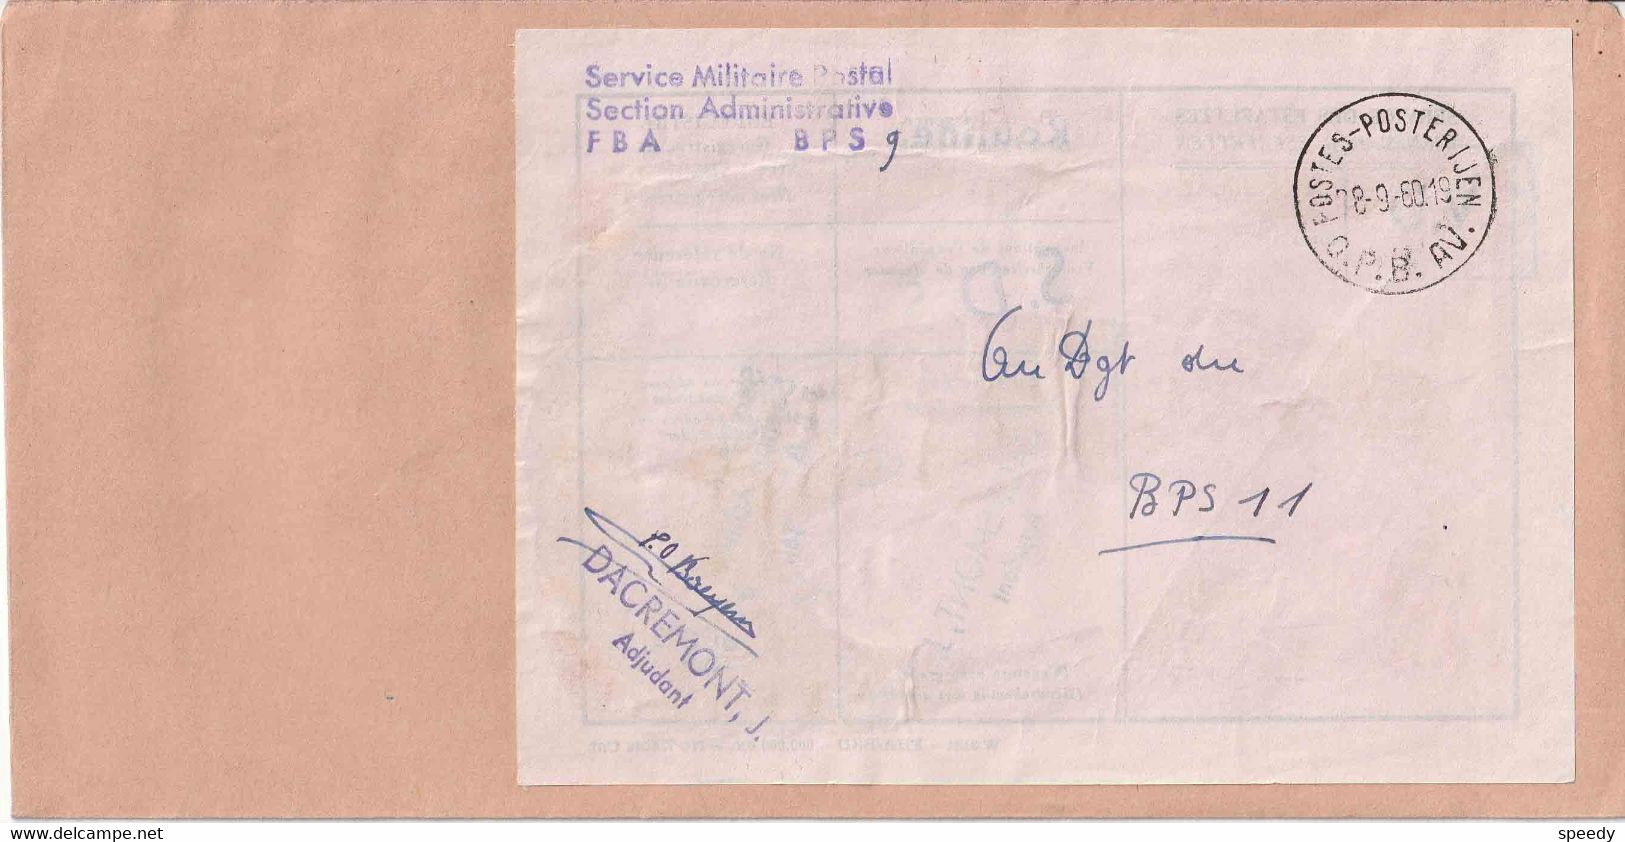 Bf  "SERVIVE MILITAIRE POSTAL / BPS 9"  Naar Dgt BPS 11 " POSTES - POSTERIJEN /28.9.60 /  O. P. B. AV."  (RRR) - Marcas De La Armada